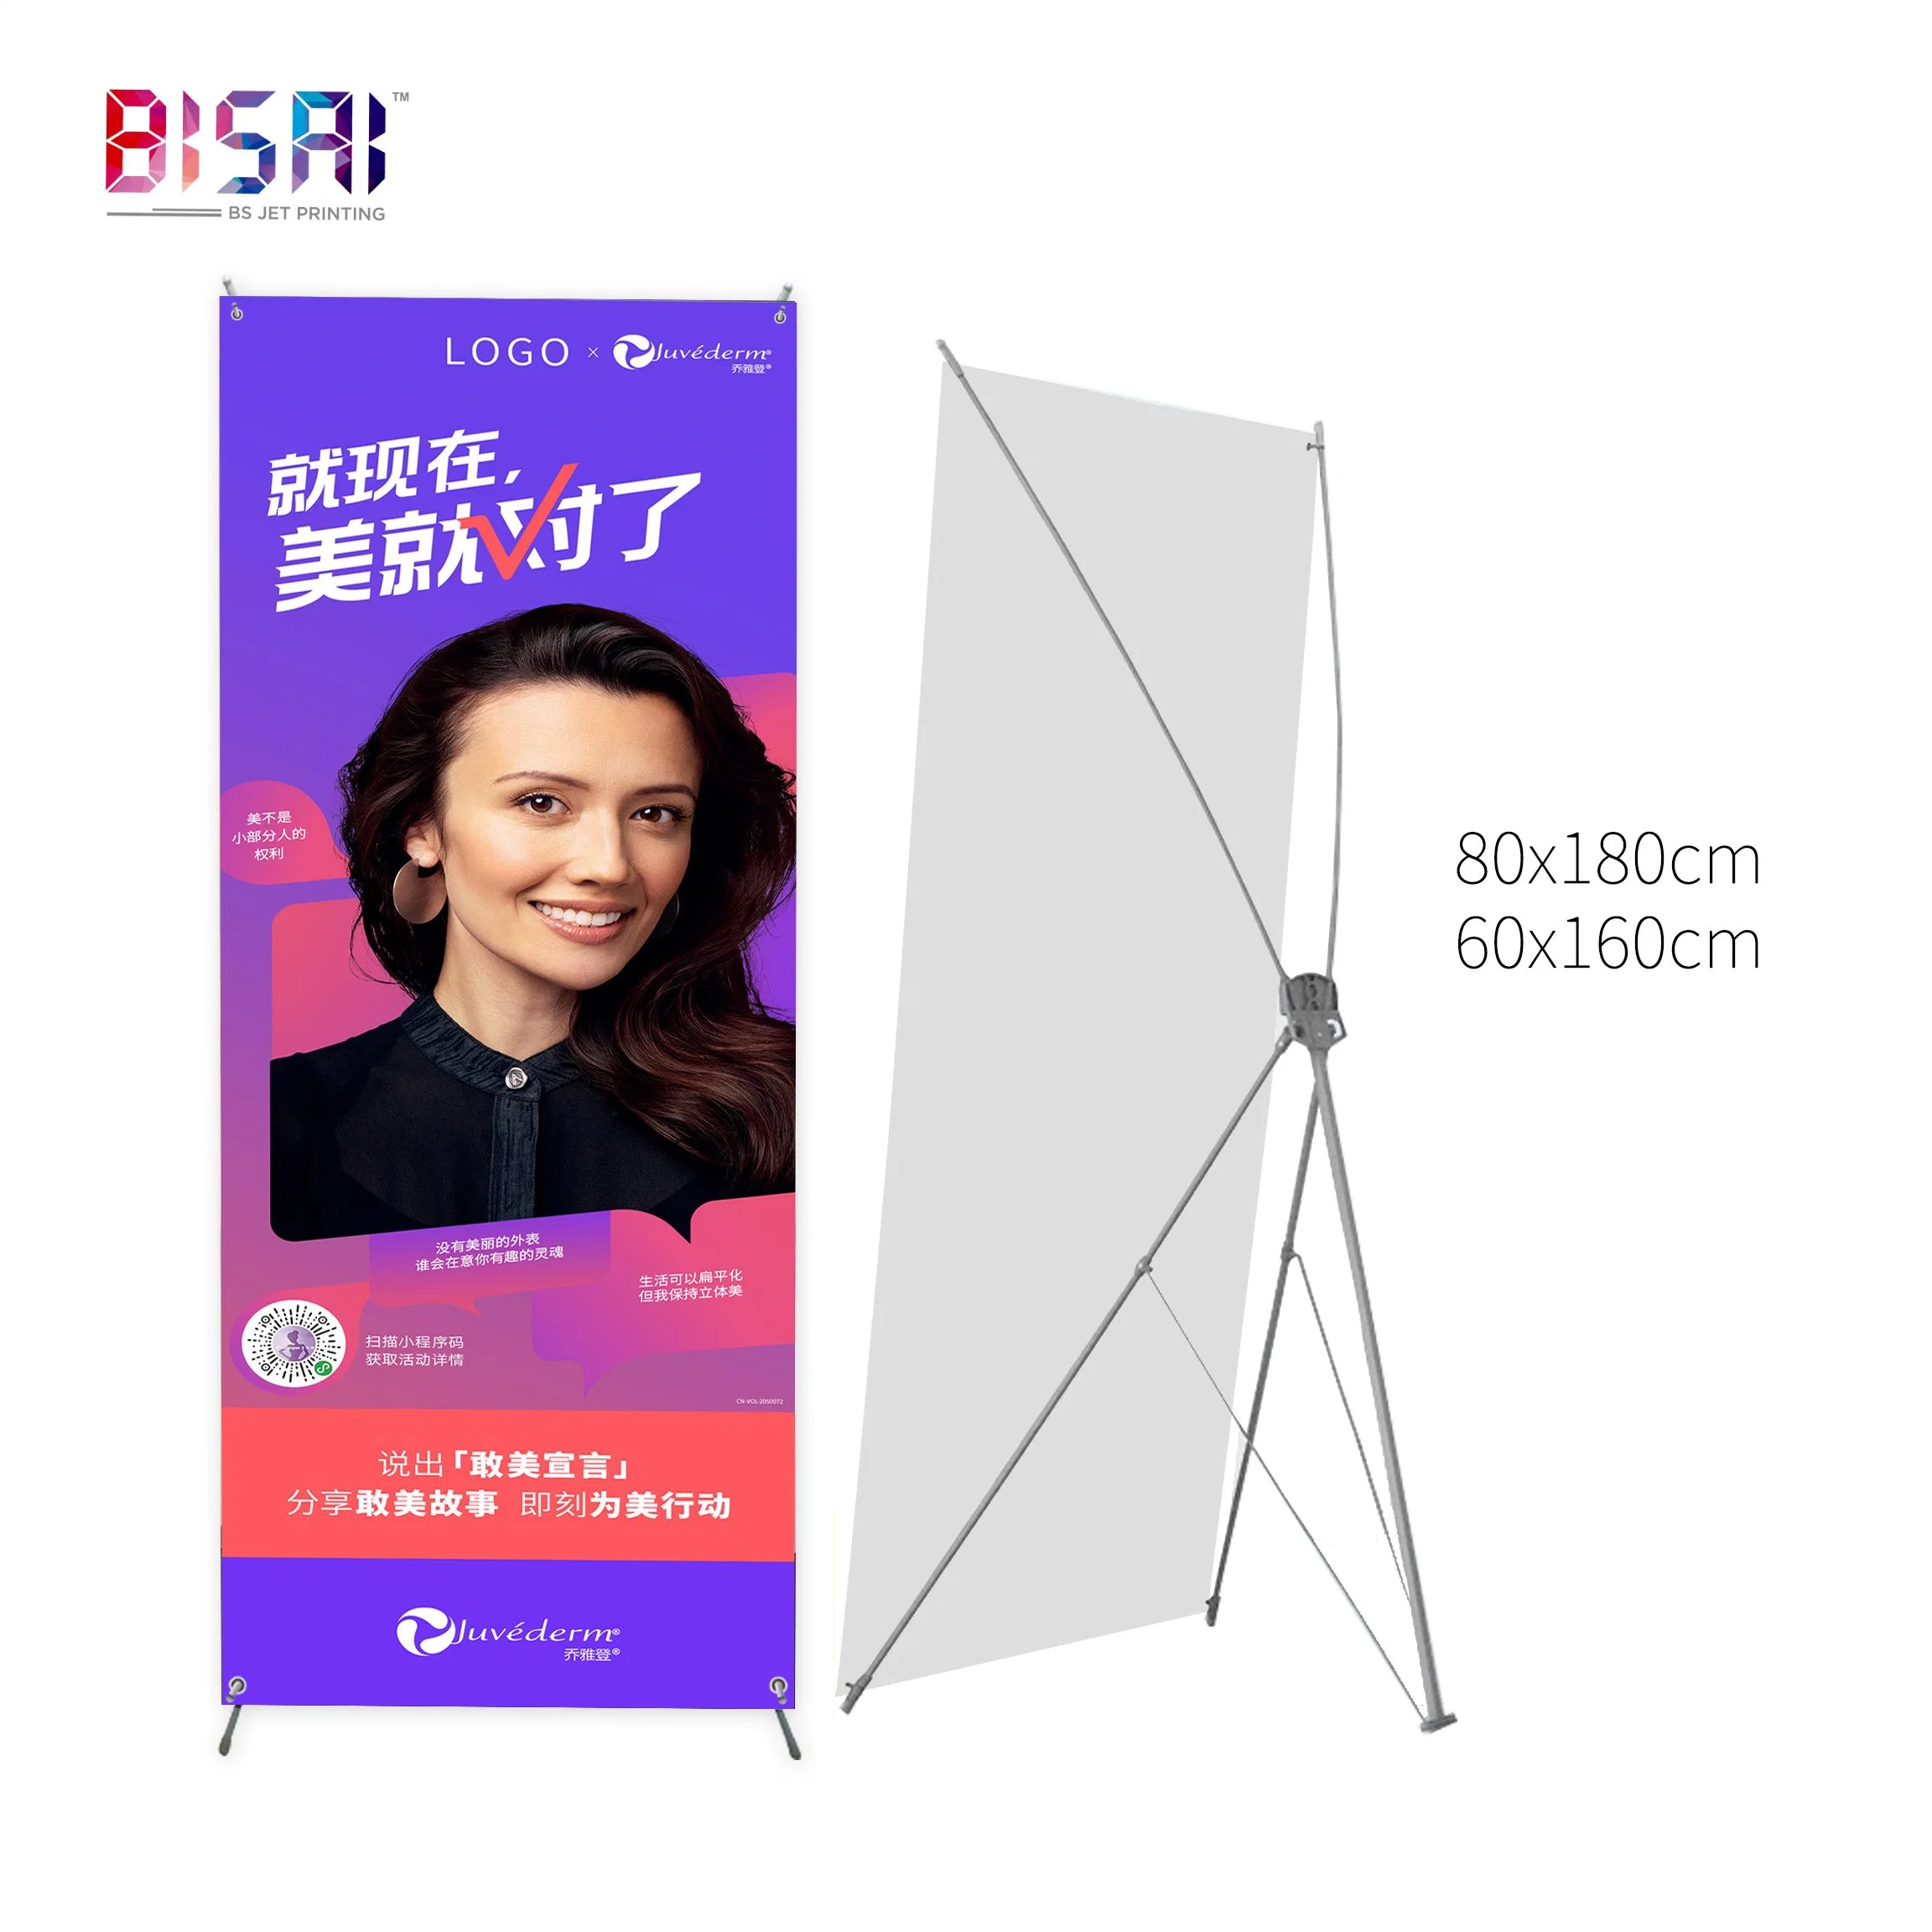 China Wholesale/Supplier personalizar la publicidad exterior de PVC de promoción de la base de acrílico X soporte de cartón de Banner Roll up Expositor